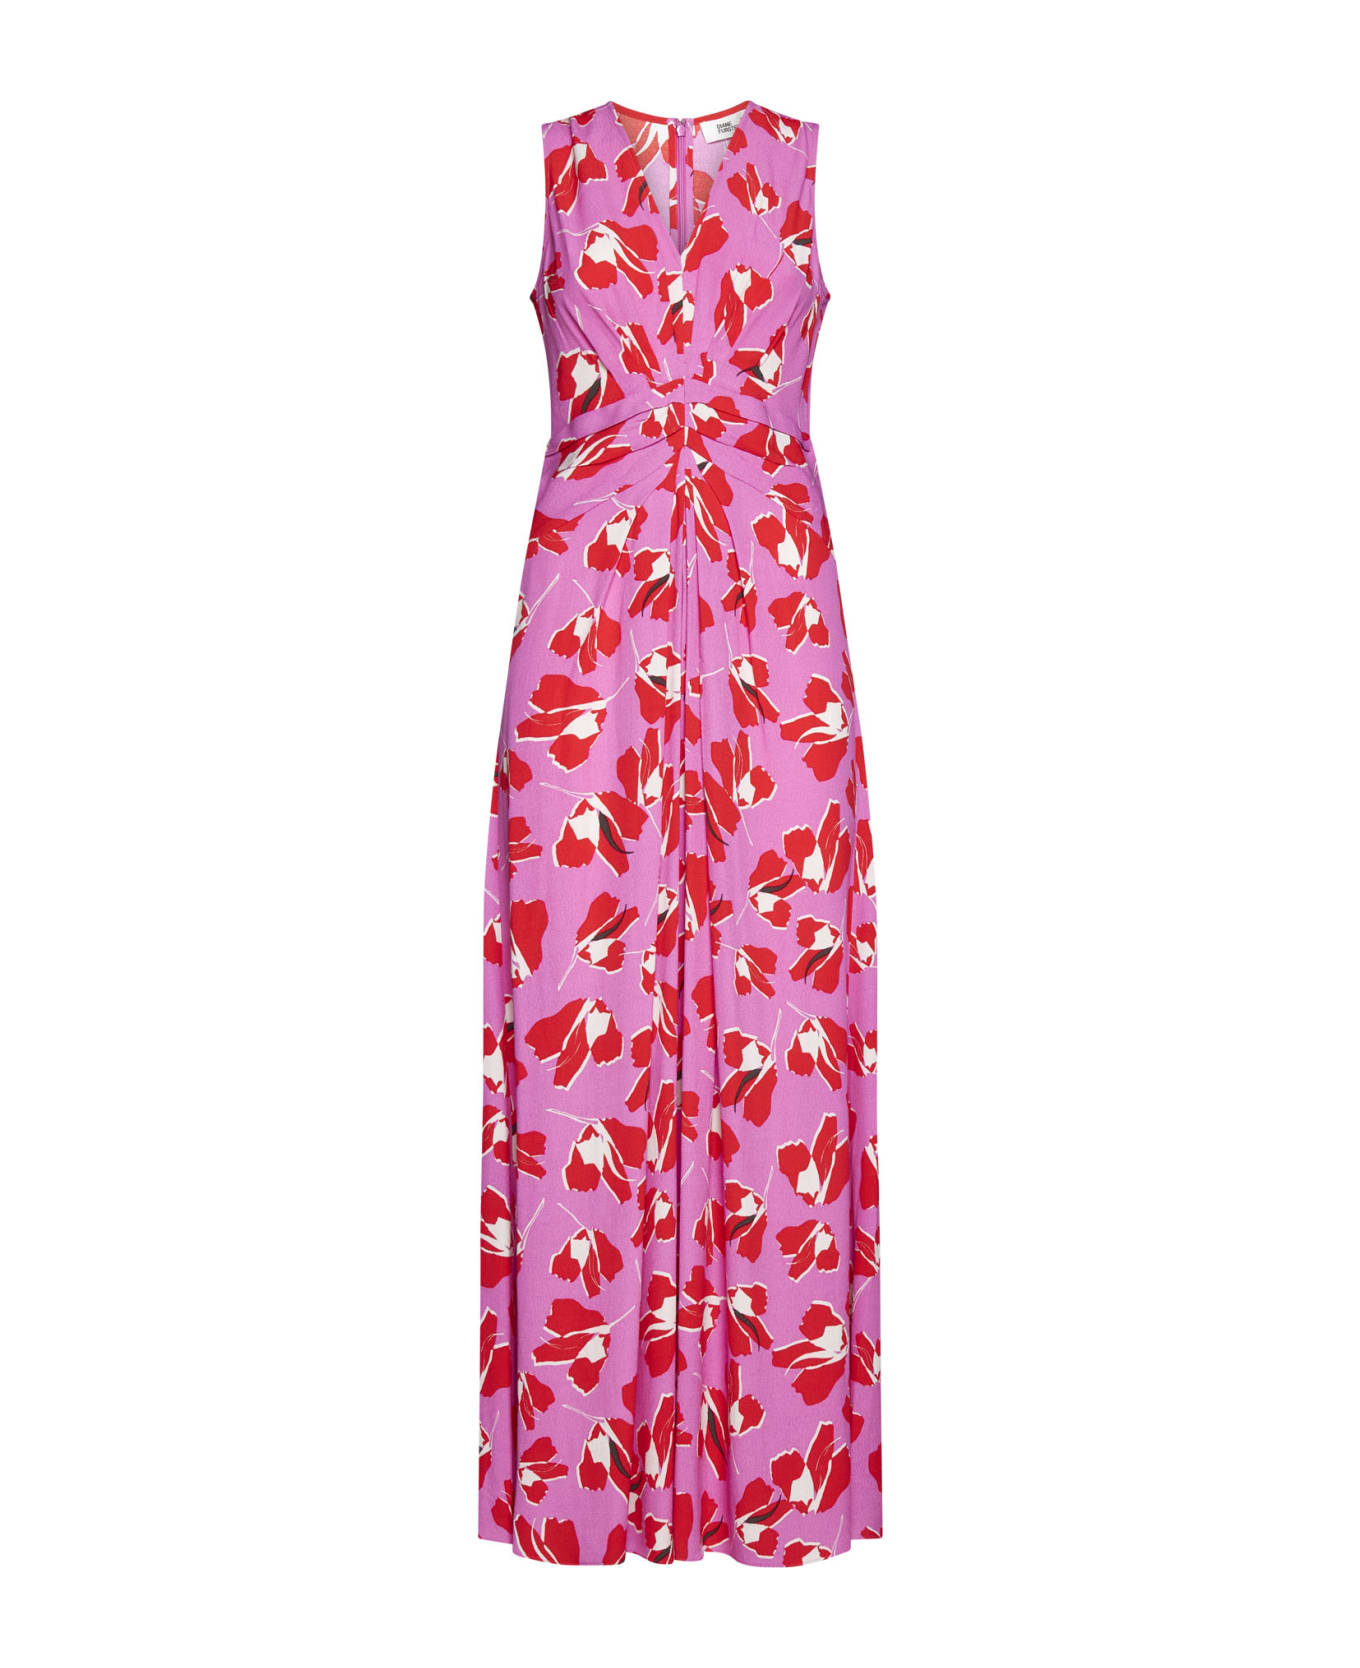 Diane Von Furstenberg Dress - Paper tulip lg pink